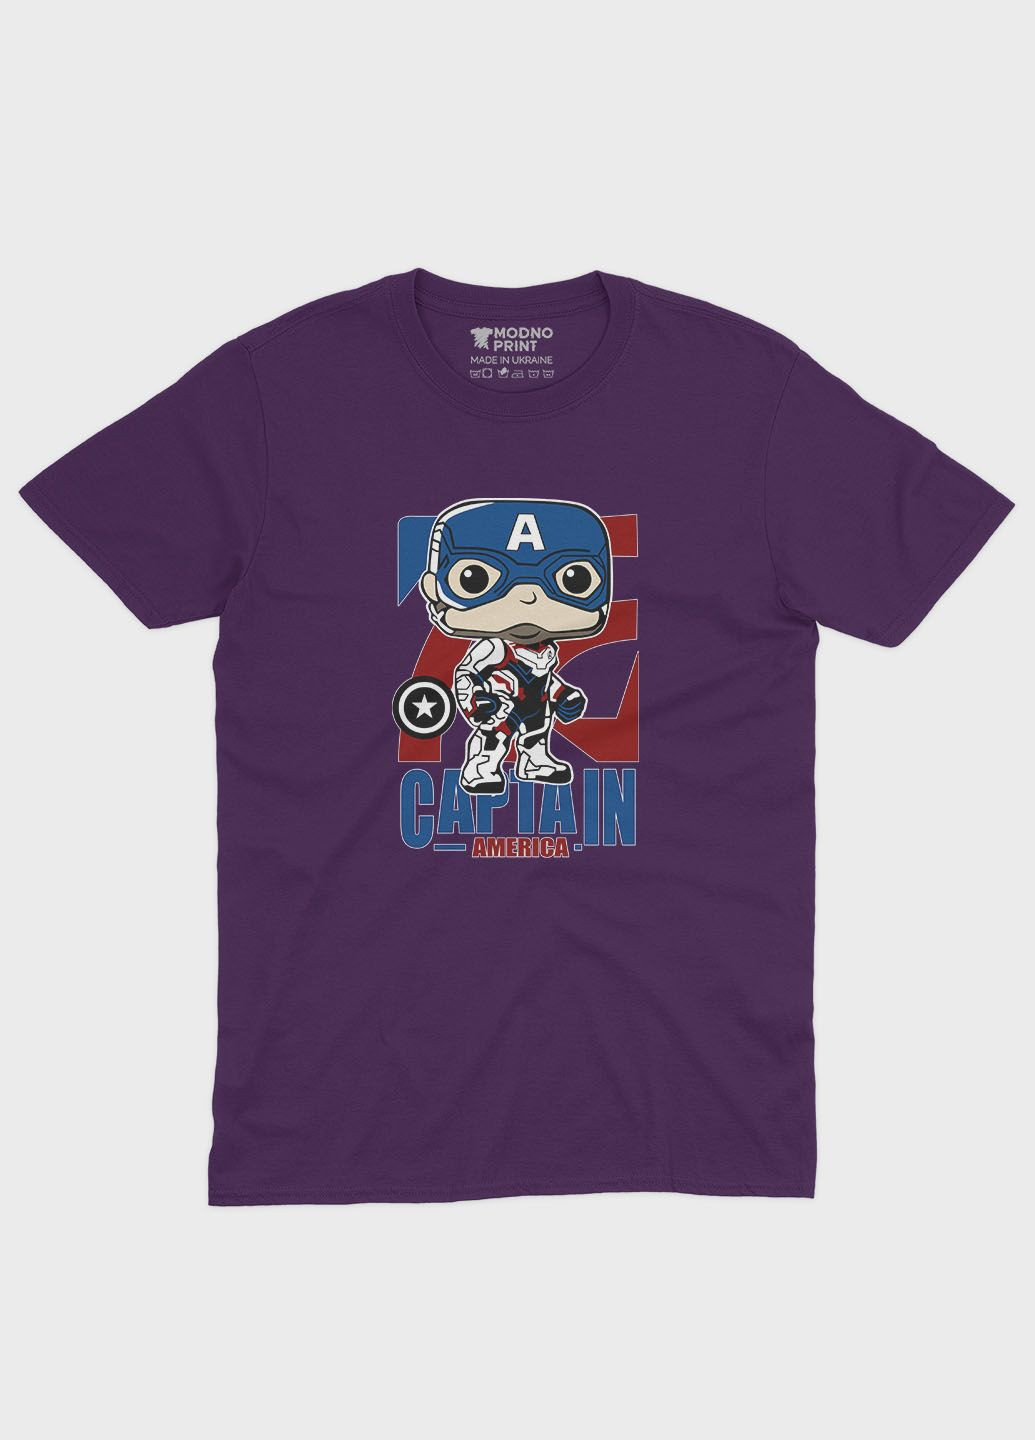 Фіолетова демісезонна футболка для хлопчика з принтом супергероя - капітан америка (ts001-1-dby-006-022-007-b) Modno